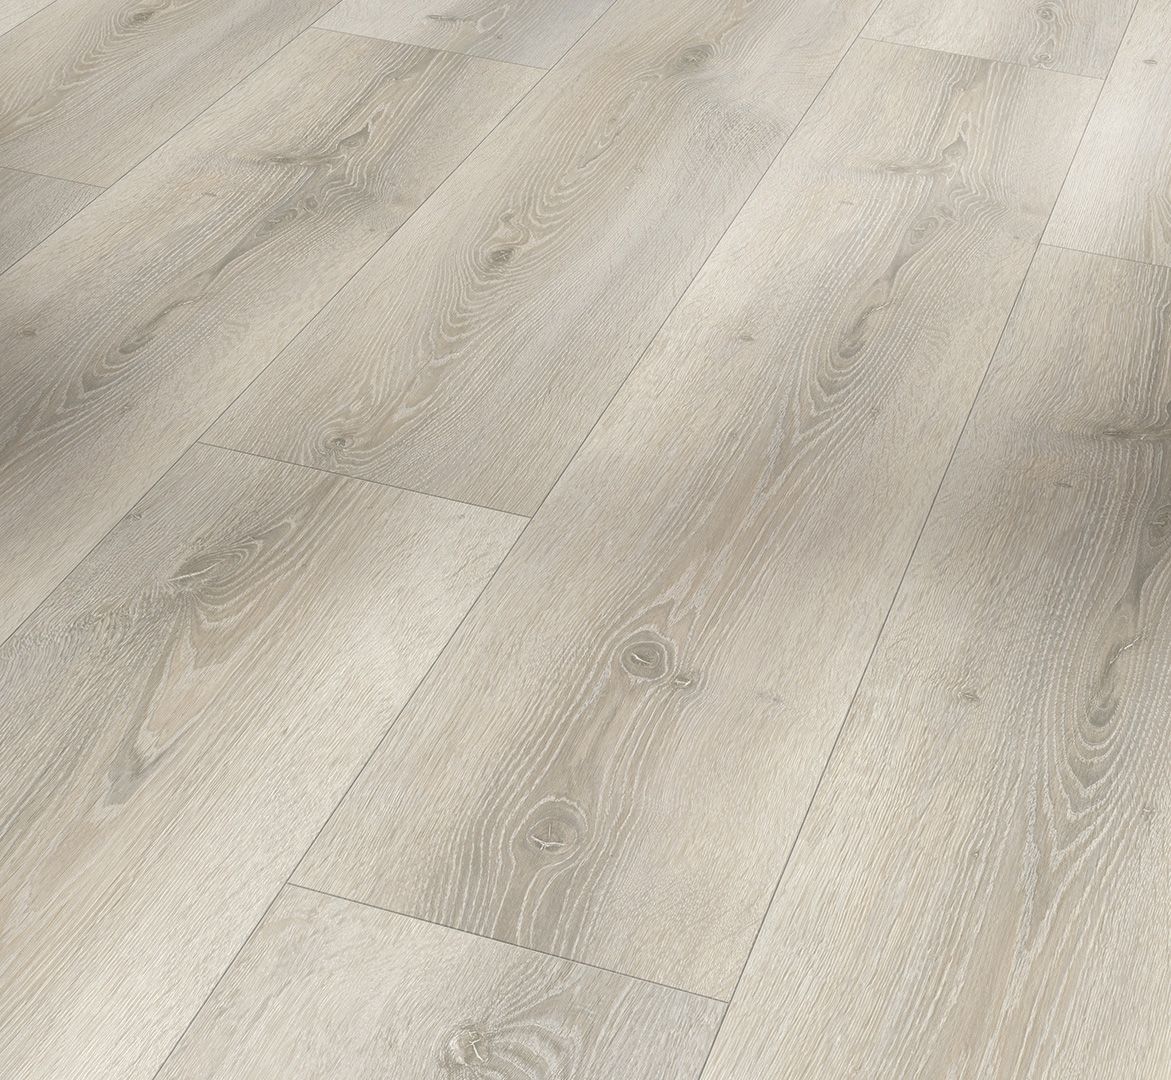 Wide Plank White Oak Flooring - Oak and Broad